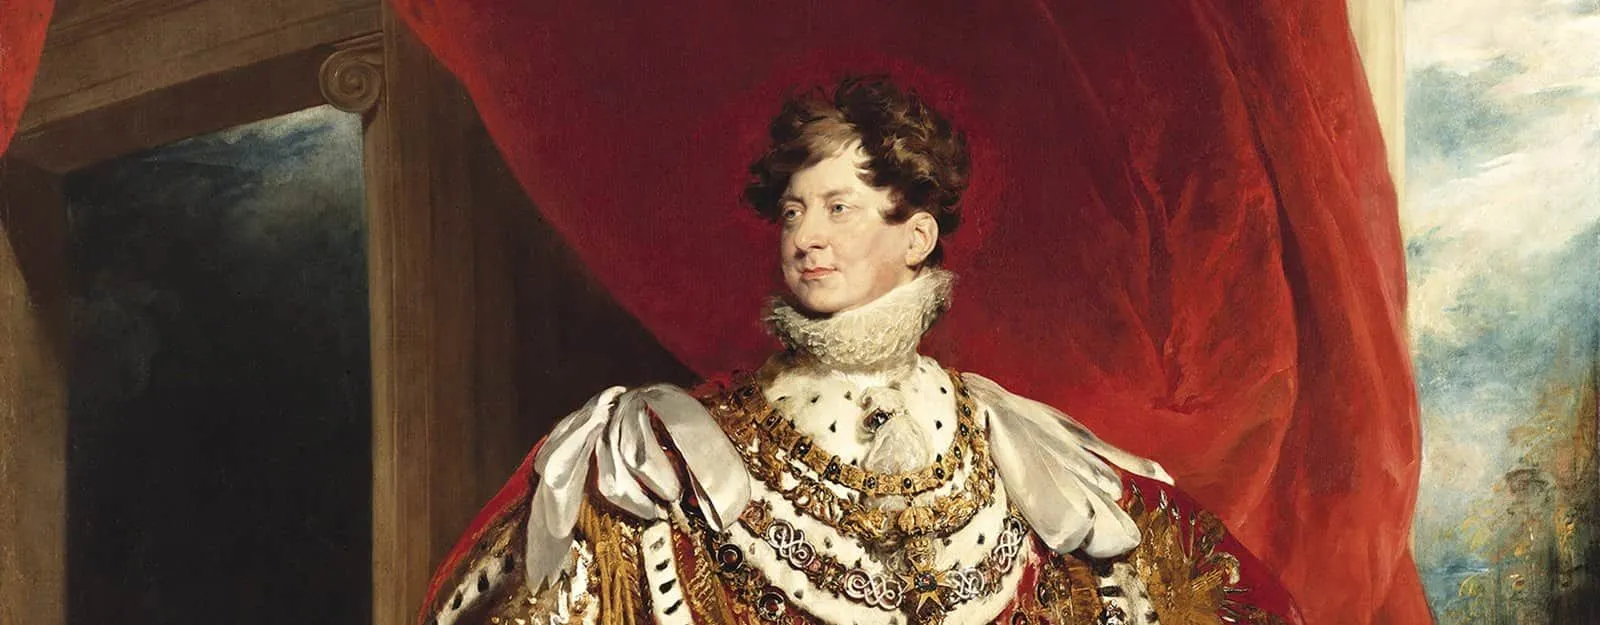 Peinture du roi George IV lors de son exposition.